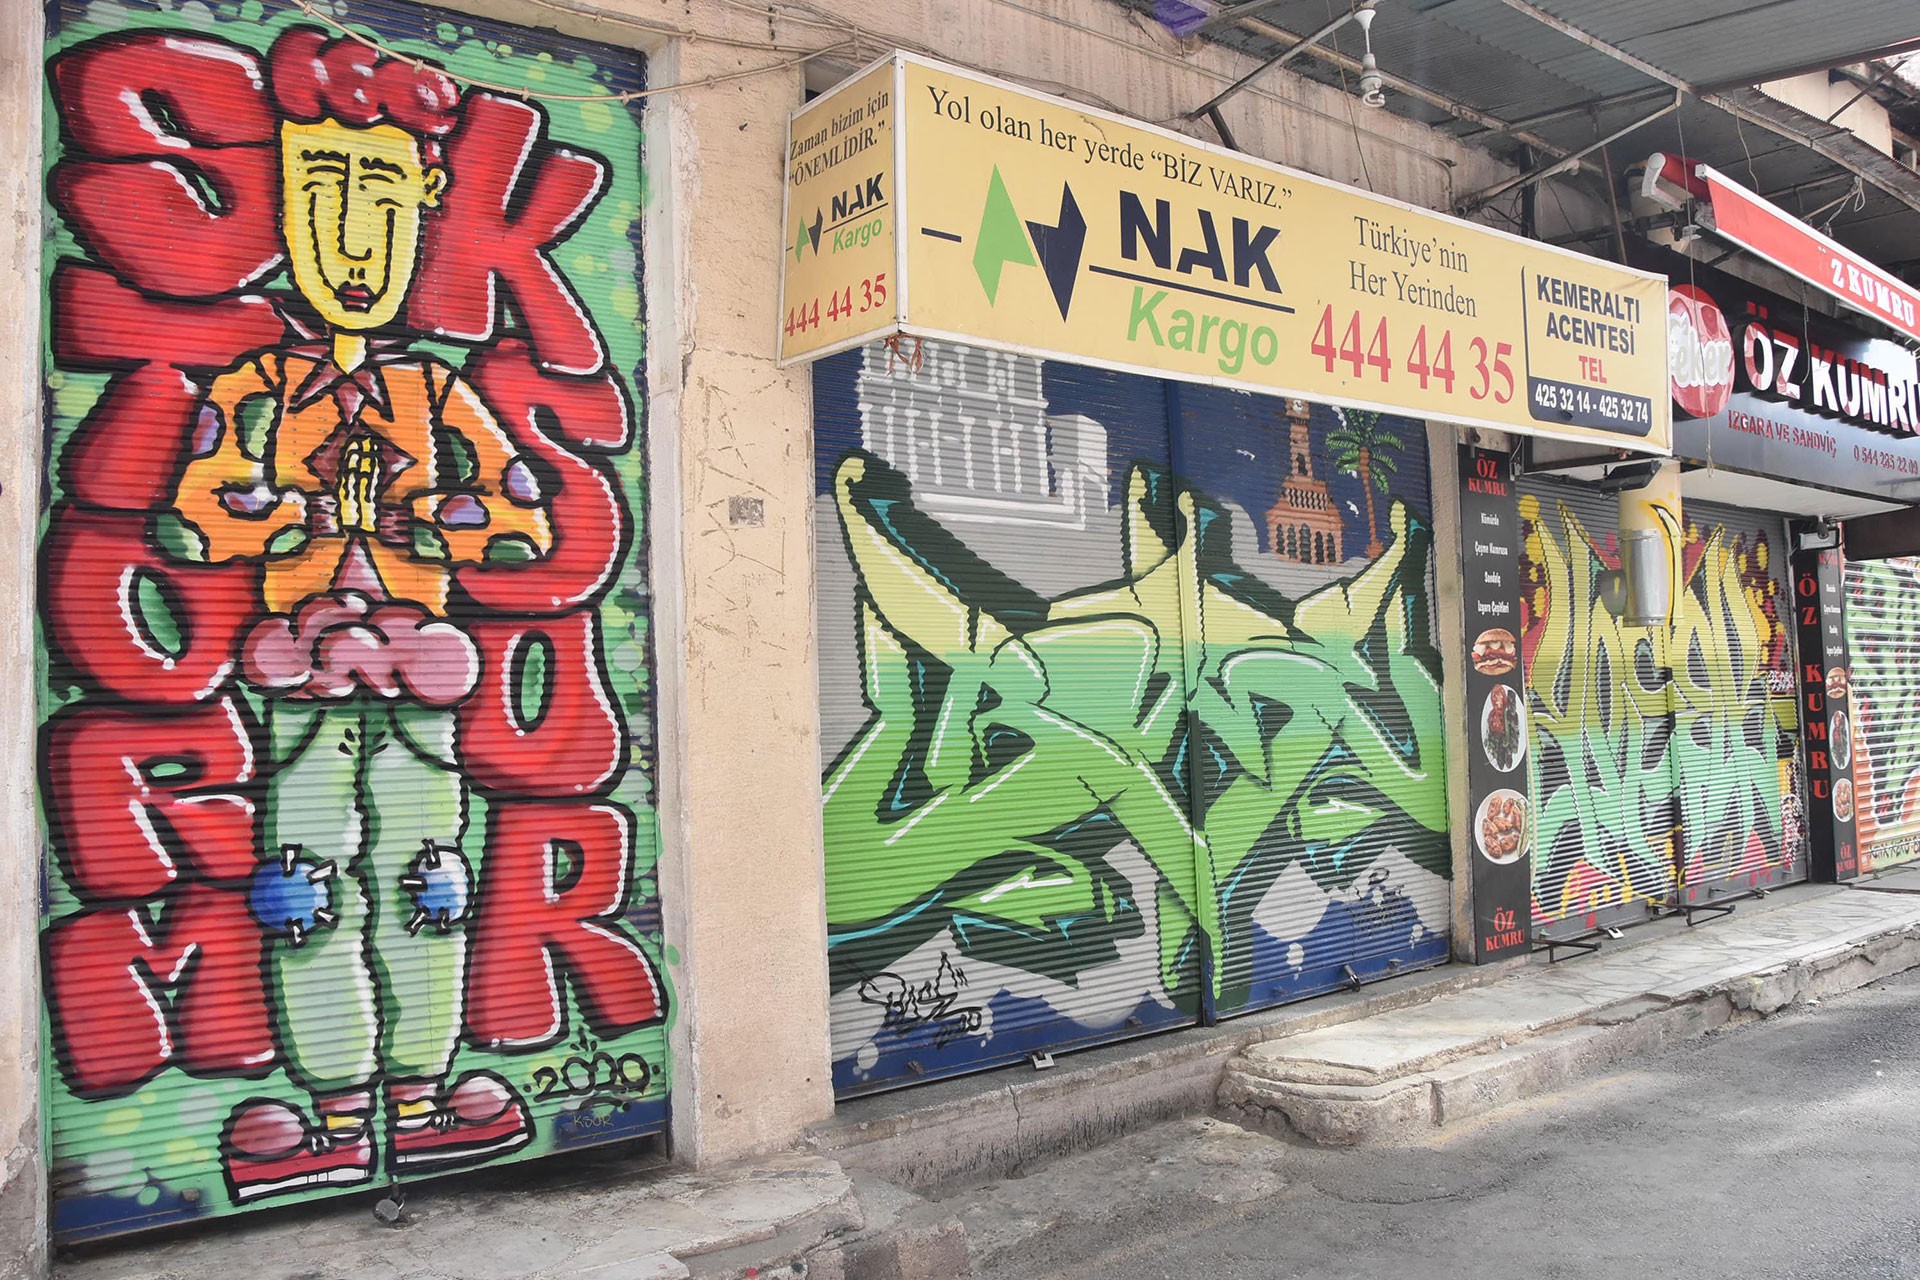 Kemeraltı Çarşısı'ndaki iş yerlerinin kepenklerine çizilen grafitiler.